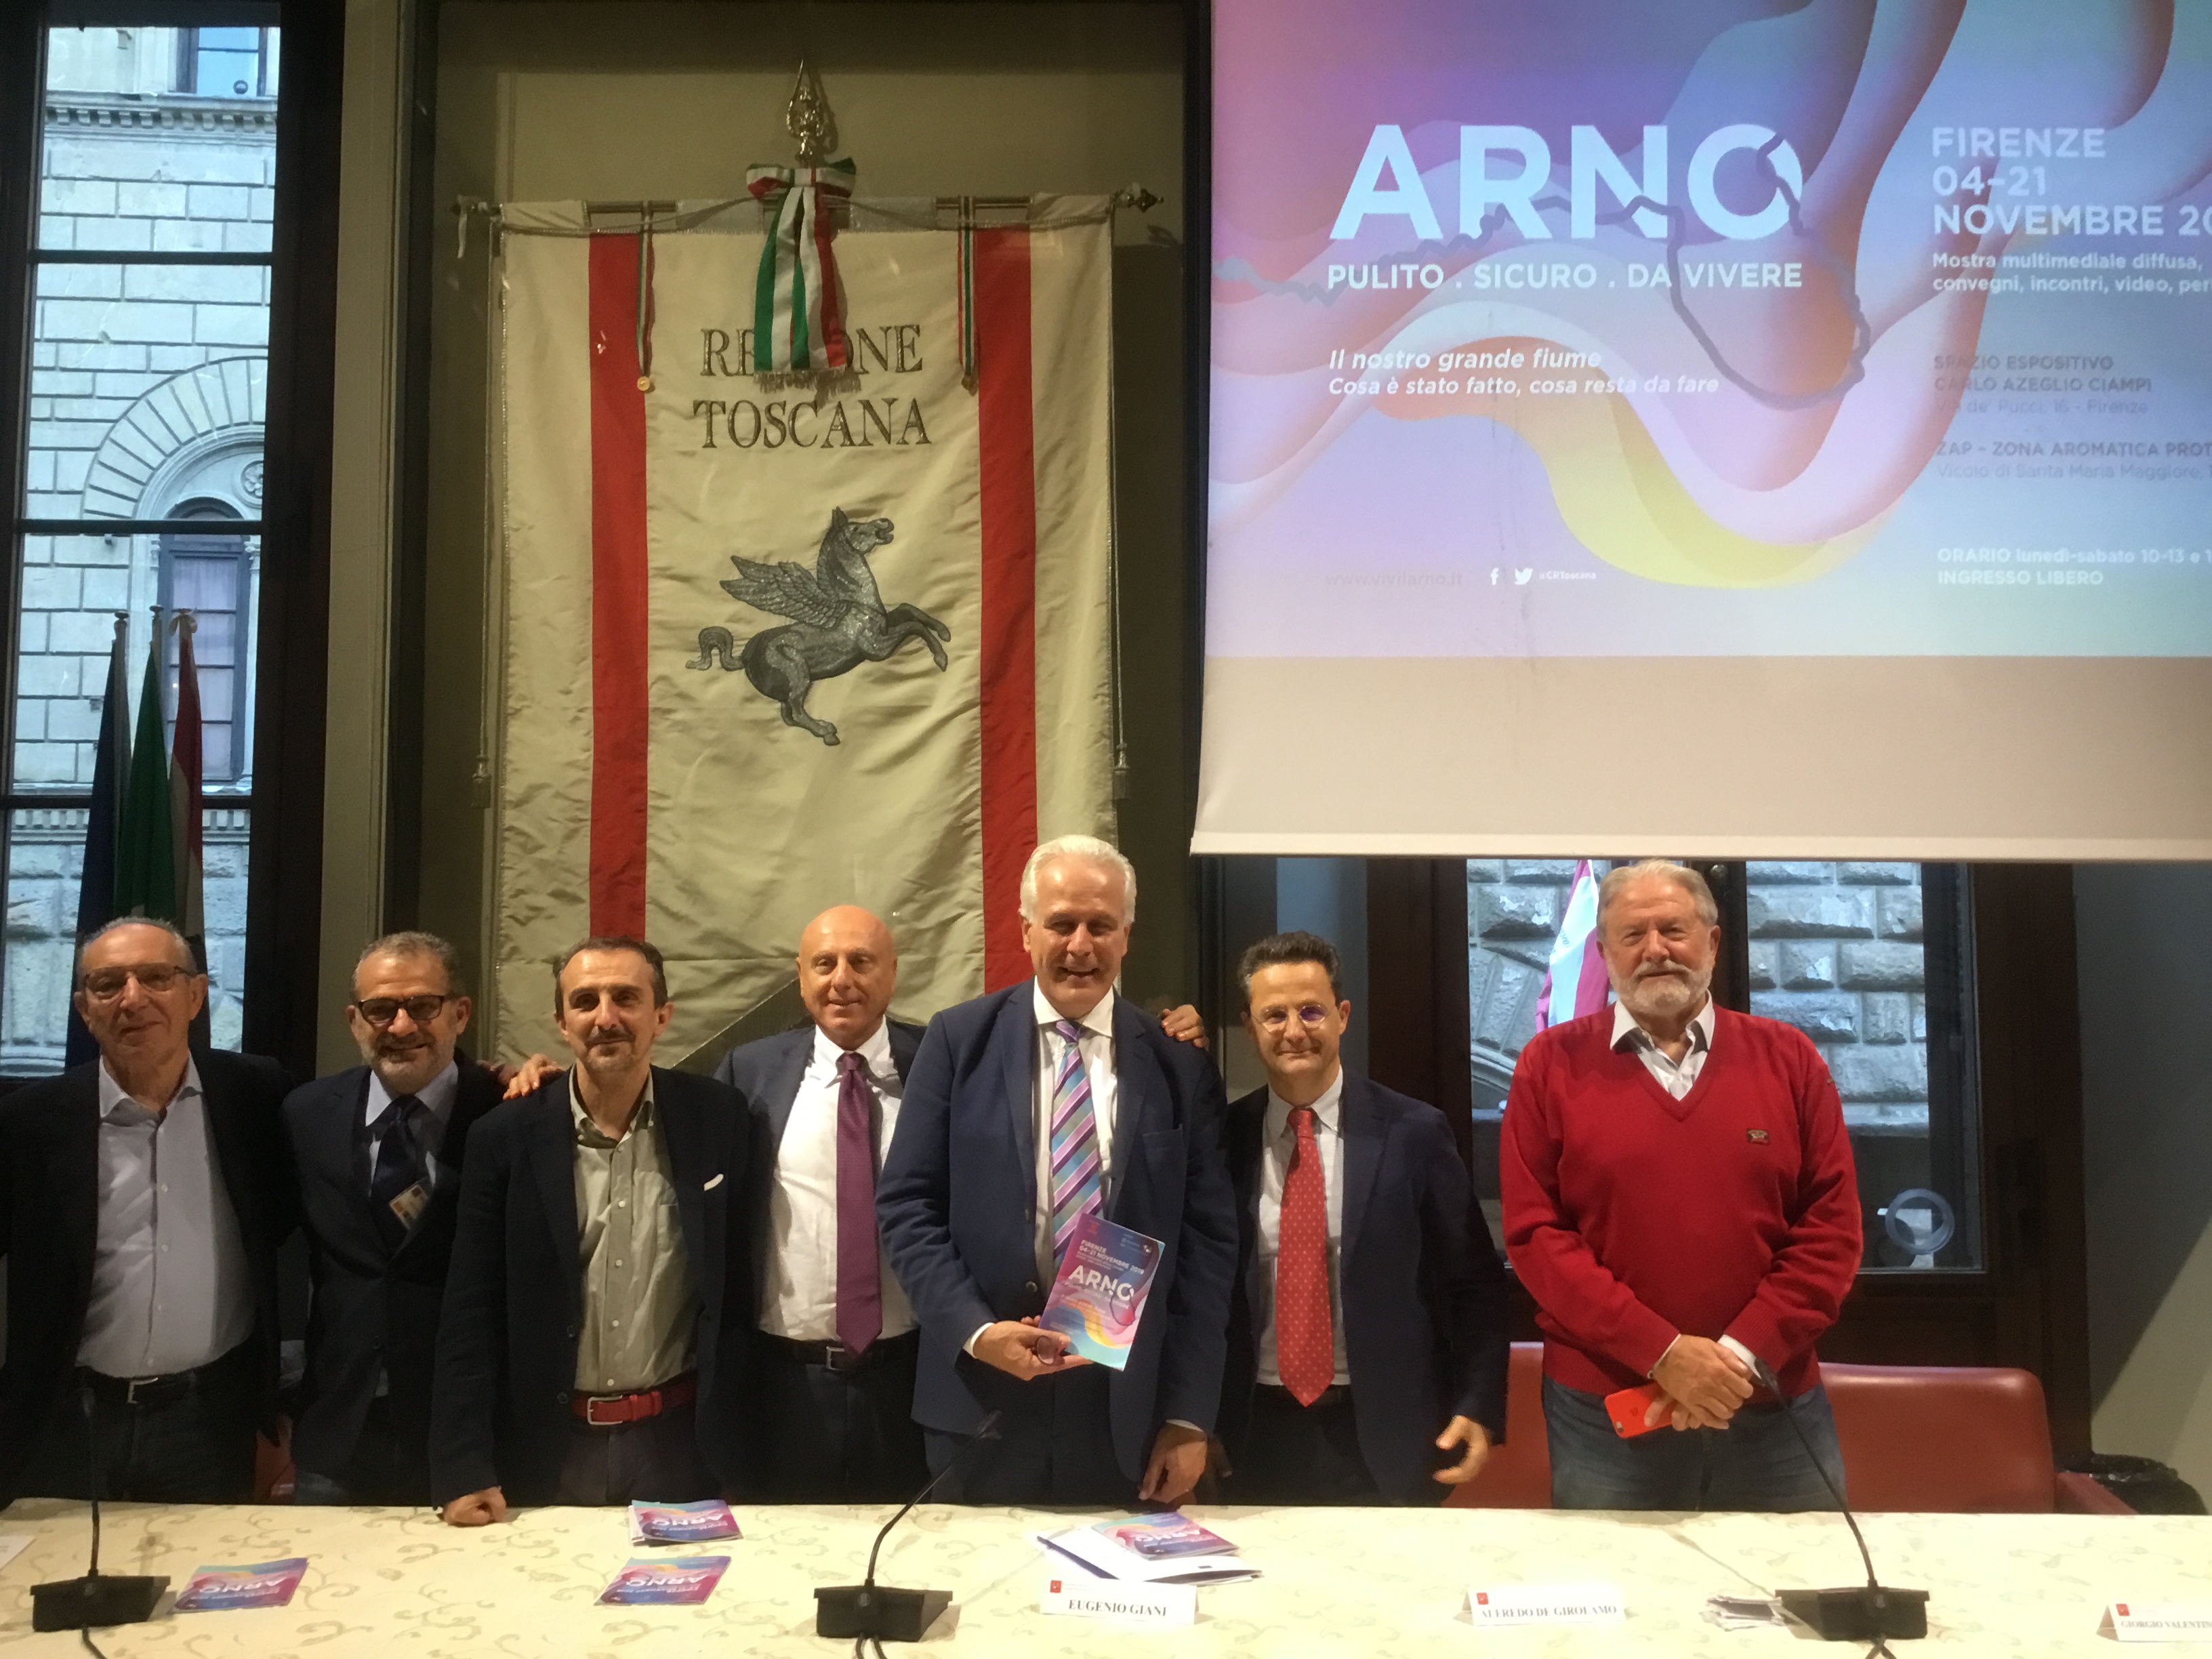 Foto presentazione mostra Arno 2019 – Foto Giornalista Franco Mariani